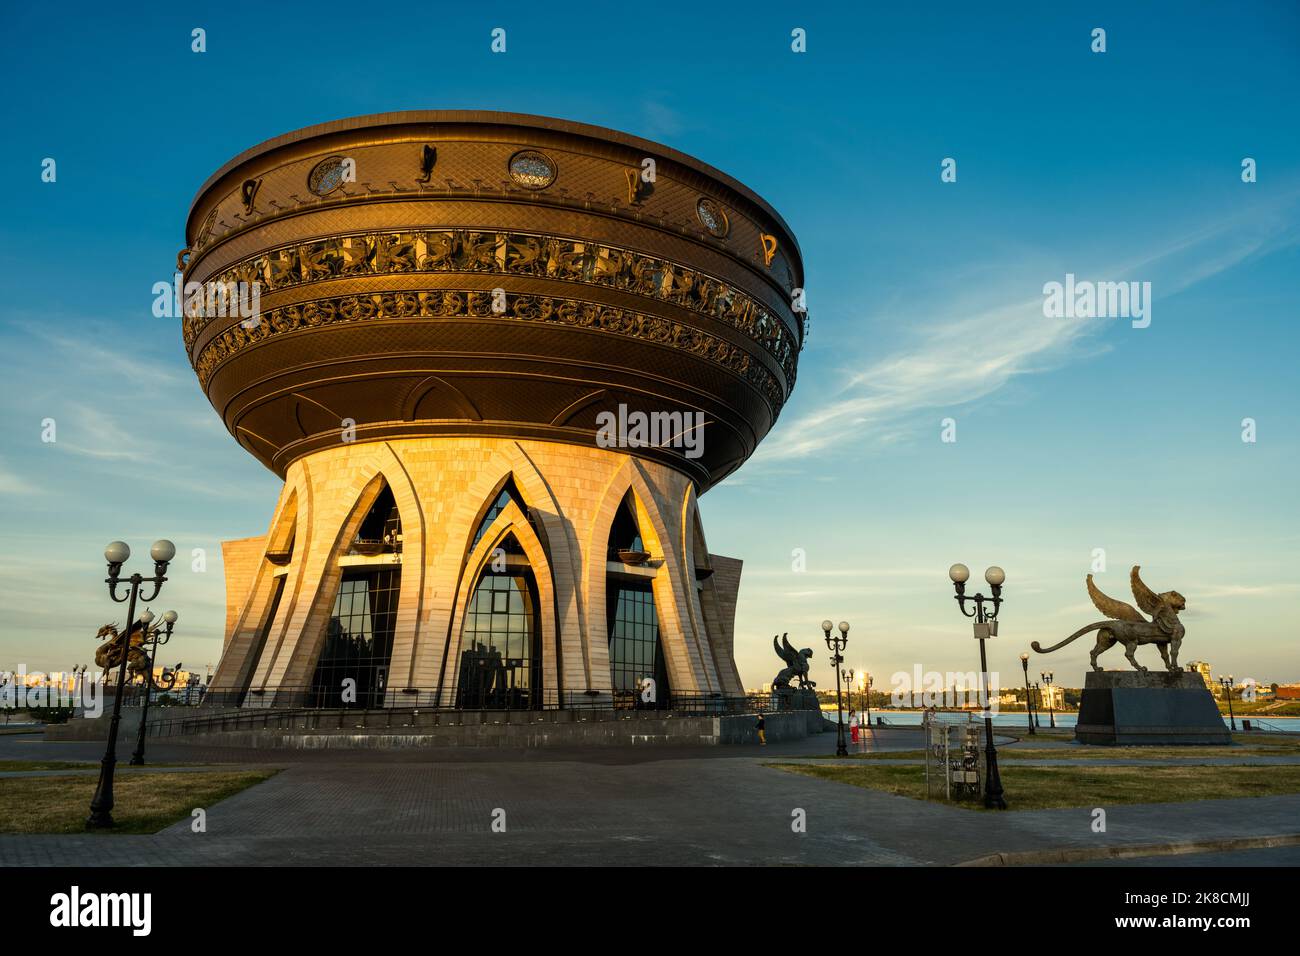 Kasan Wedding Palace (Family Center) am Himmel Hintergrund, Tatarstan, Russland. Landschaft von ungewöhnlichen Gebäude, moderne Architektur, la Stockfoto